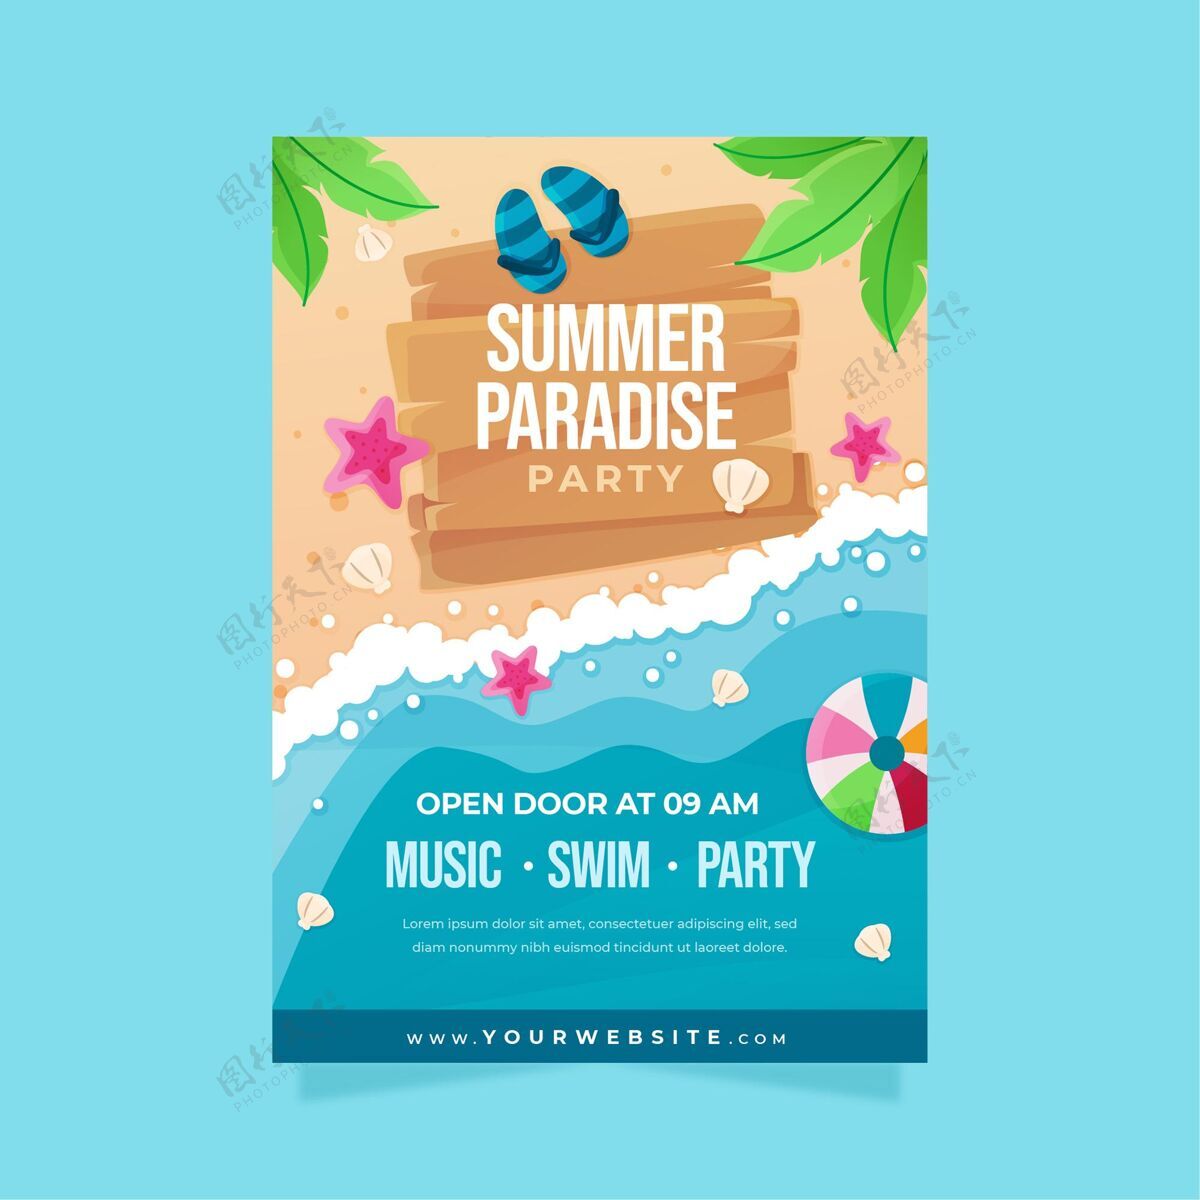 夏季平面夏日派对垂直海报模板夏季派对传单夏季派对